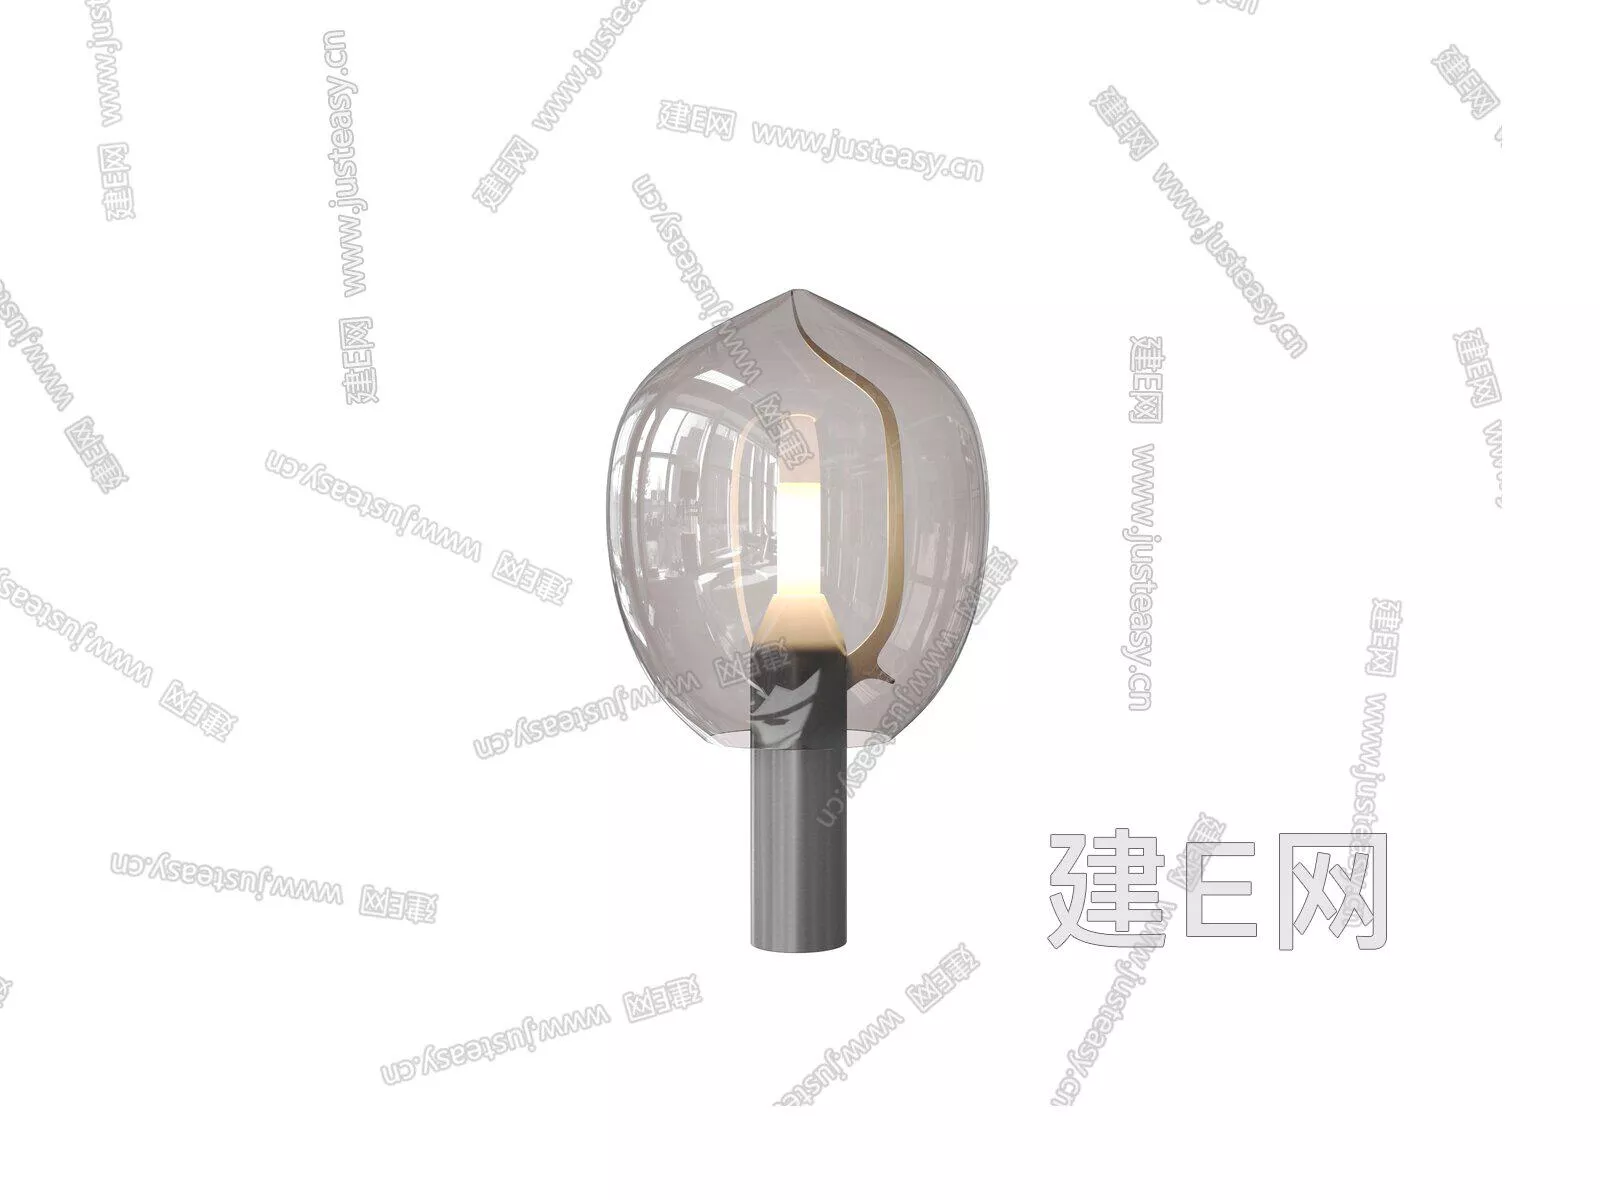 MODERN TABLE LAMP - SKETCHUP 3D MODEL - ENSCAPE - 106450391